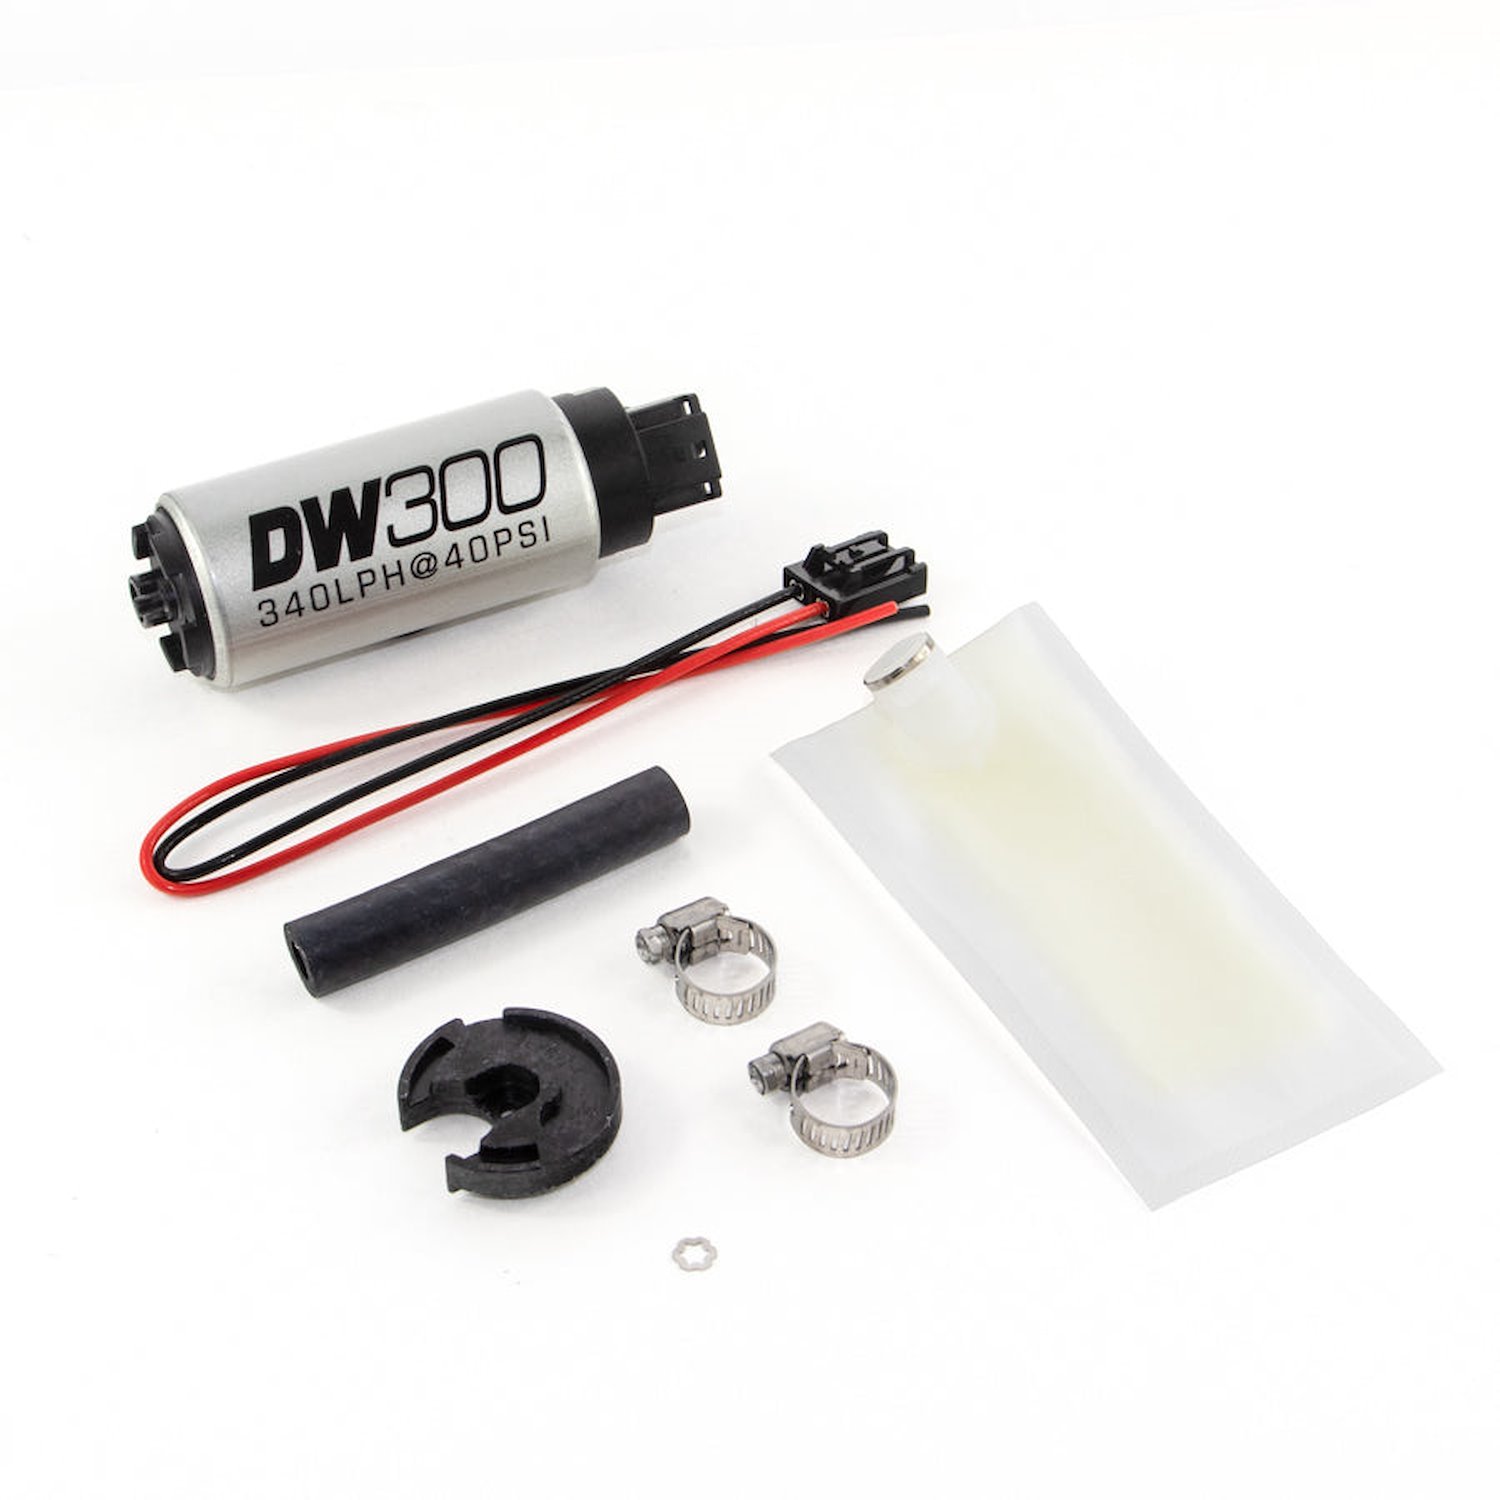 93010848 DW300 series 340lph in-tank fuel pump w/ install kit for Miata 94-05